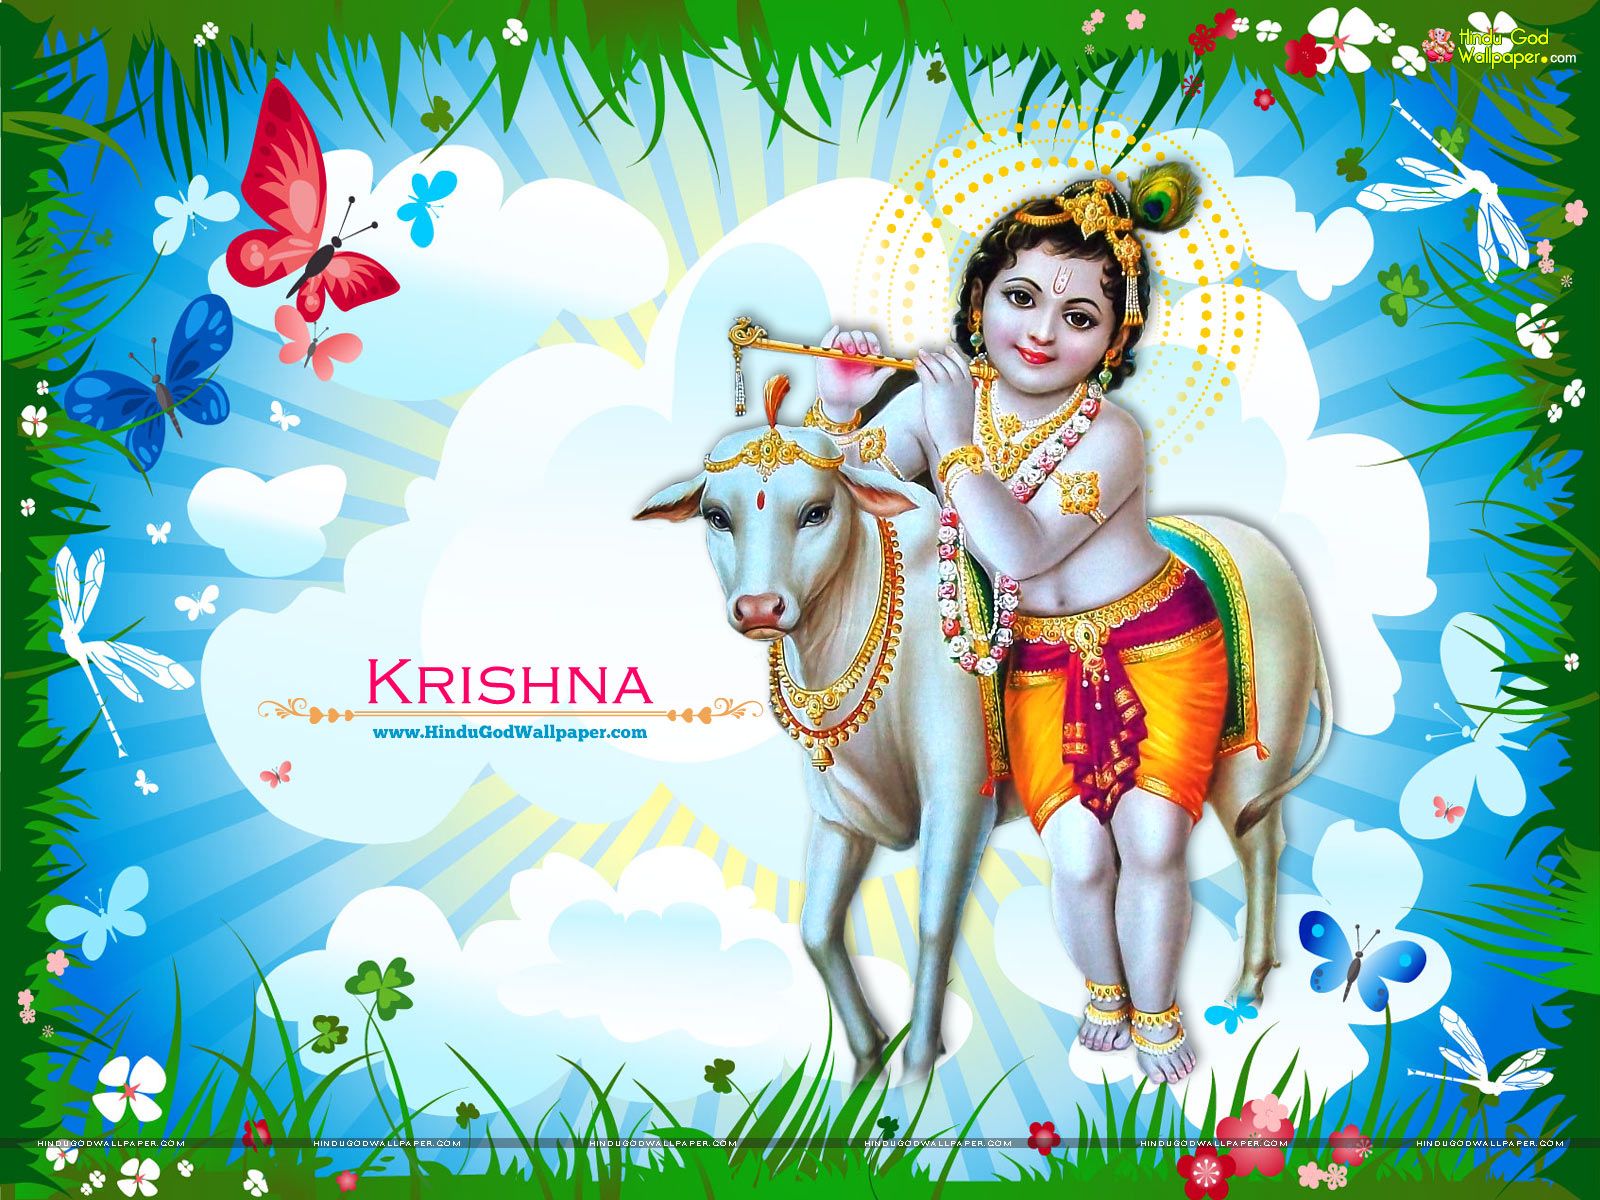 Sree Krishna Wallpapers Free Download - 1600x1200 Wallpaper 